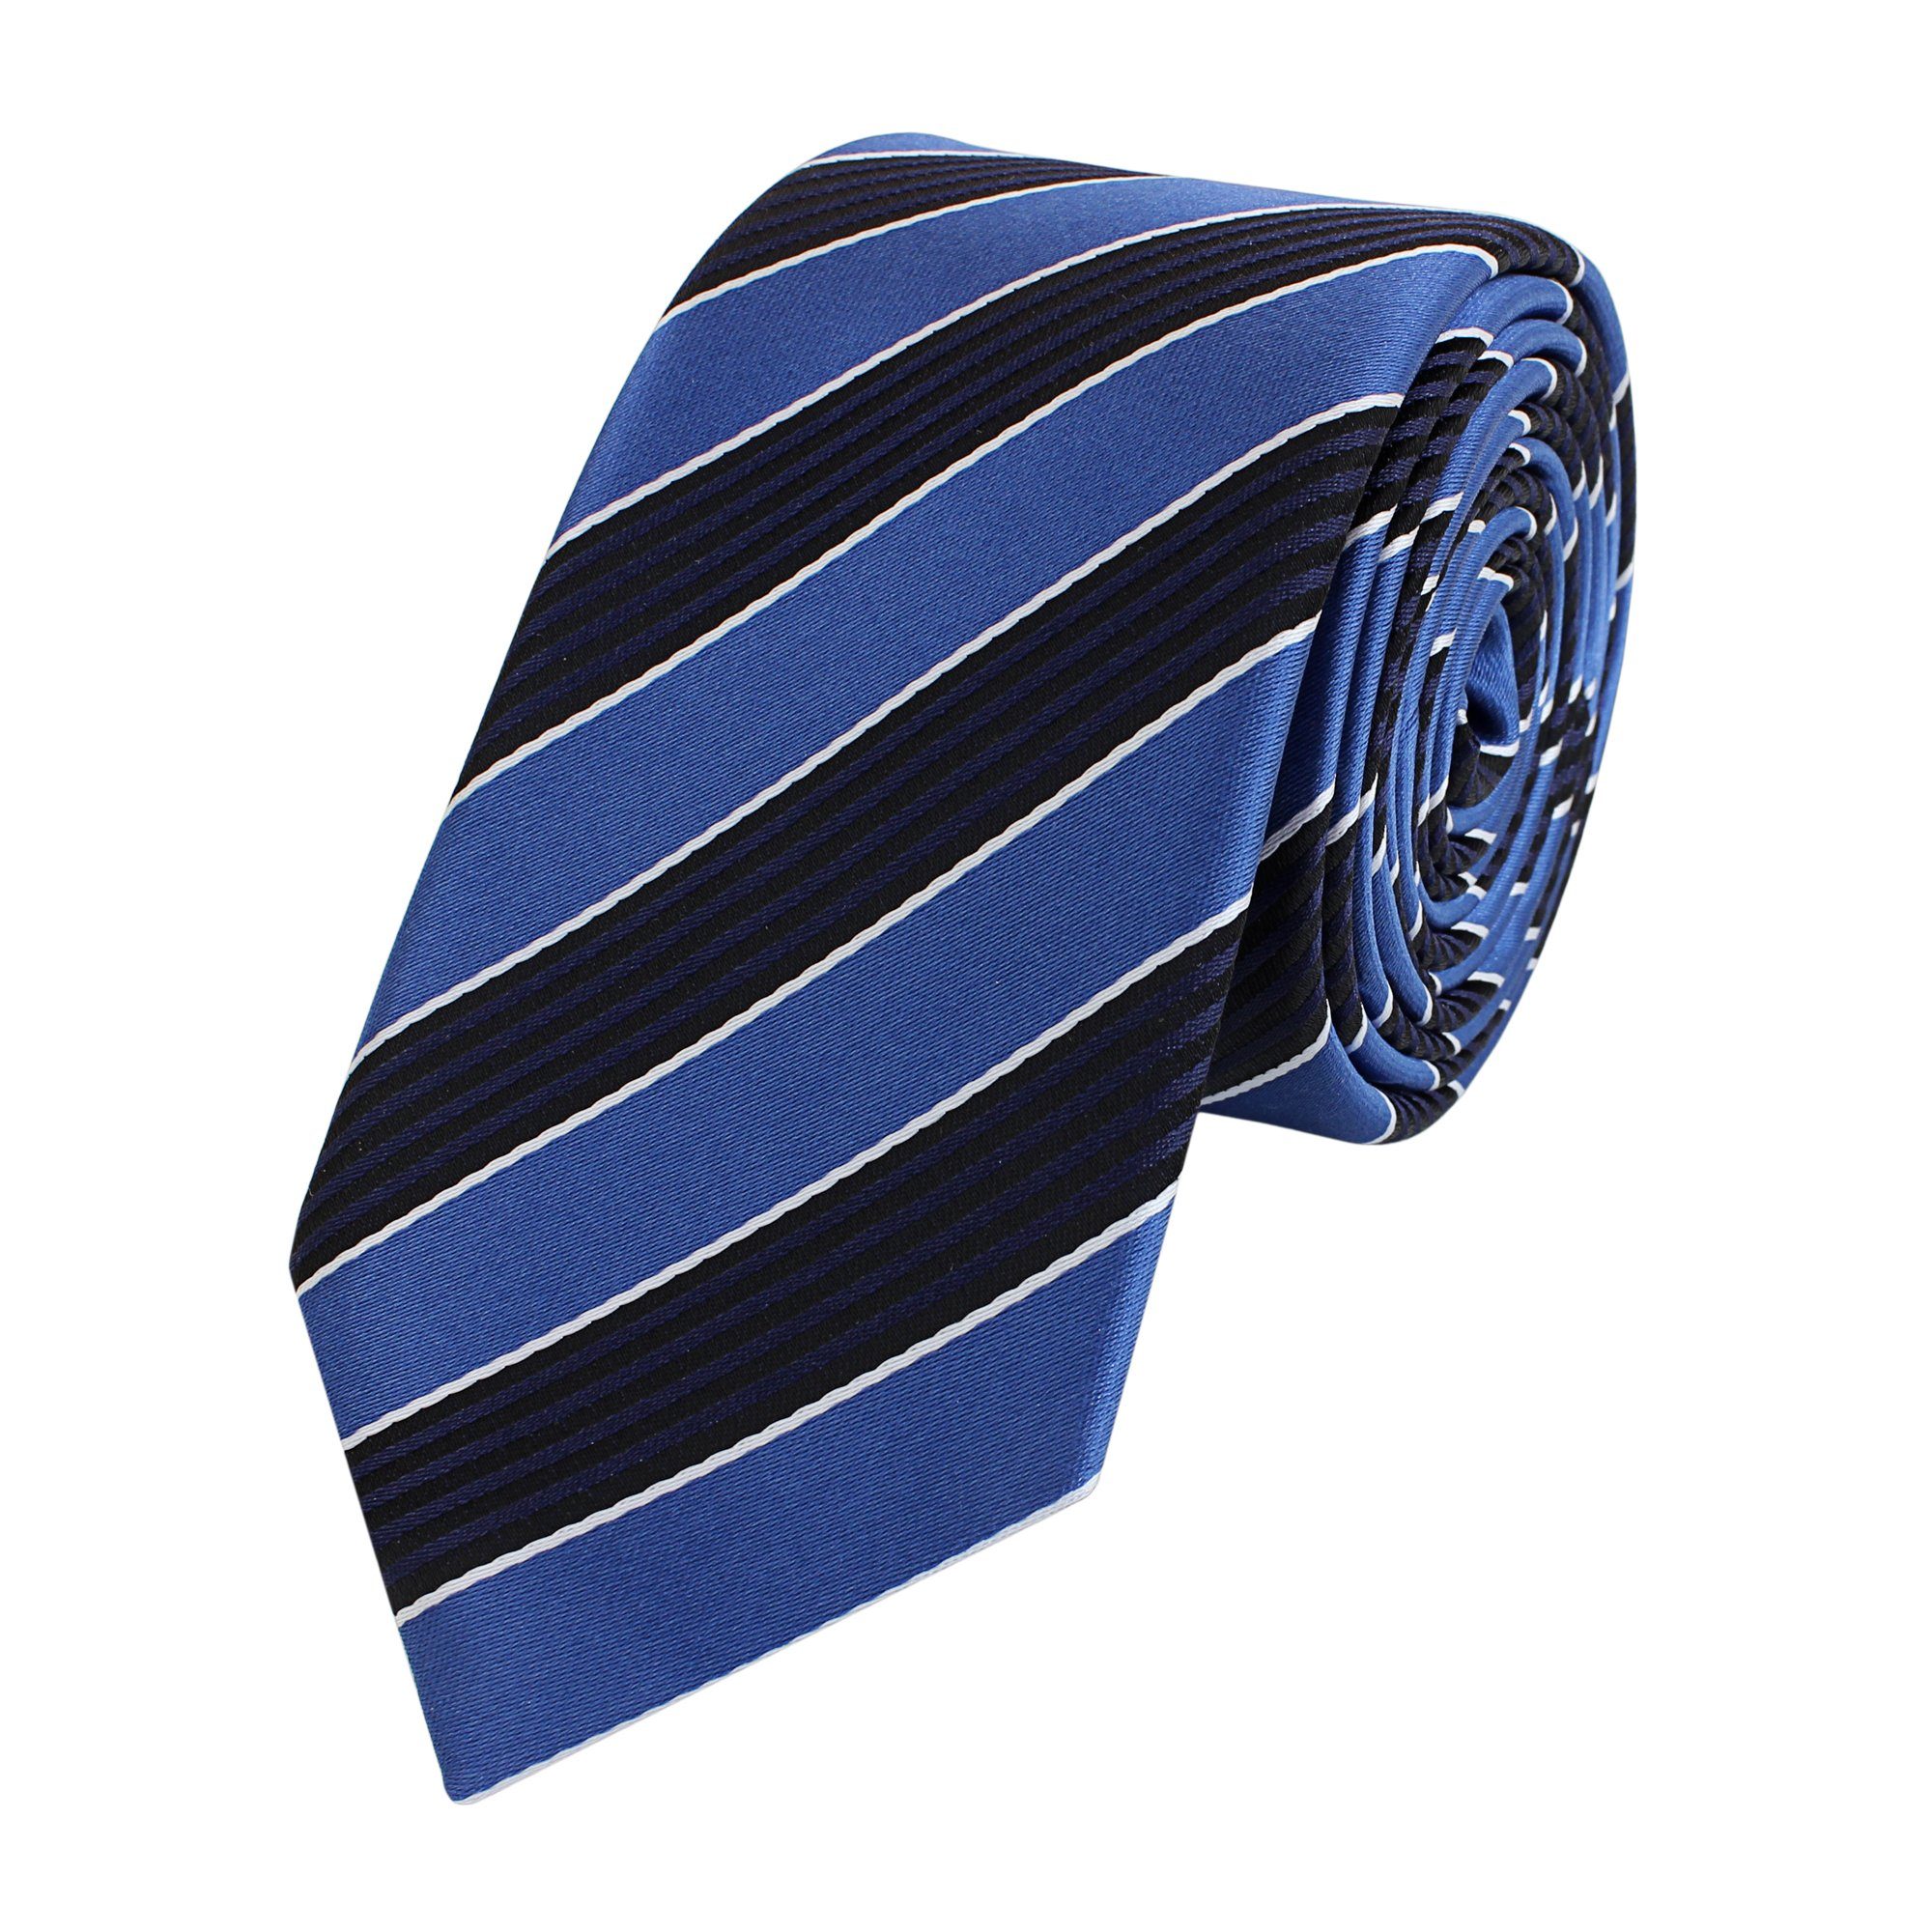 Schlips Schwarz Schmal Krawatte Fabio Männer Blaue Bleu/Noir/Blanc Farini Krawatte Herren Striefen - Cordon in Blau (6cm), - 6cm Box, (ohne verschiedene Blautöne Gestreift)